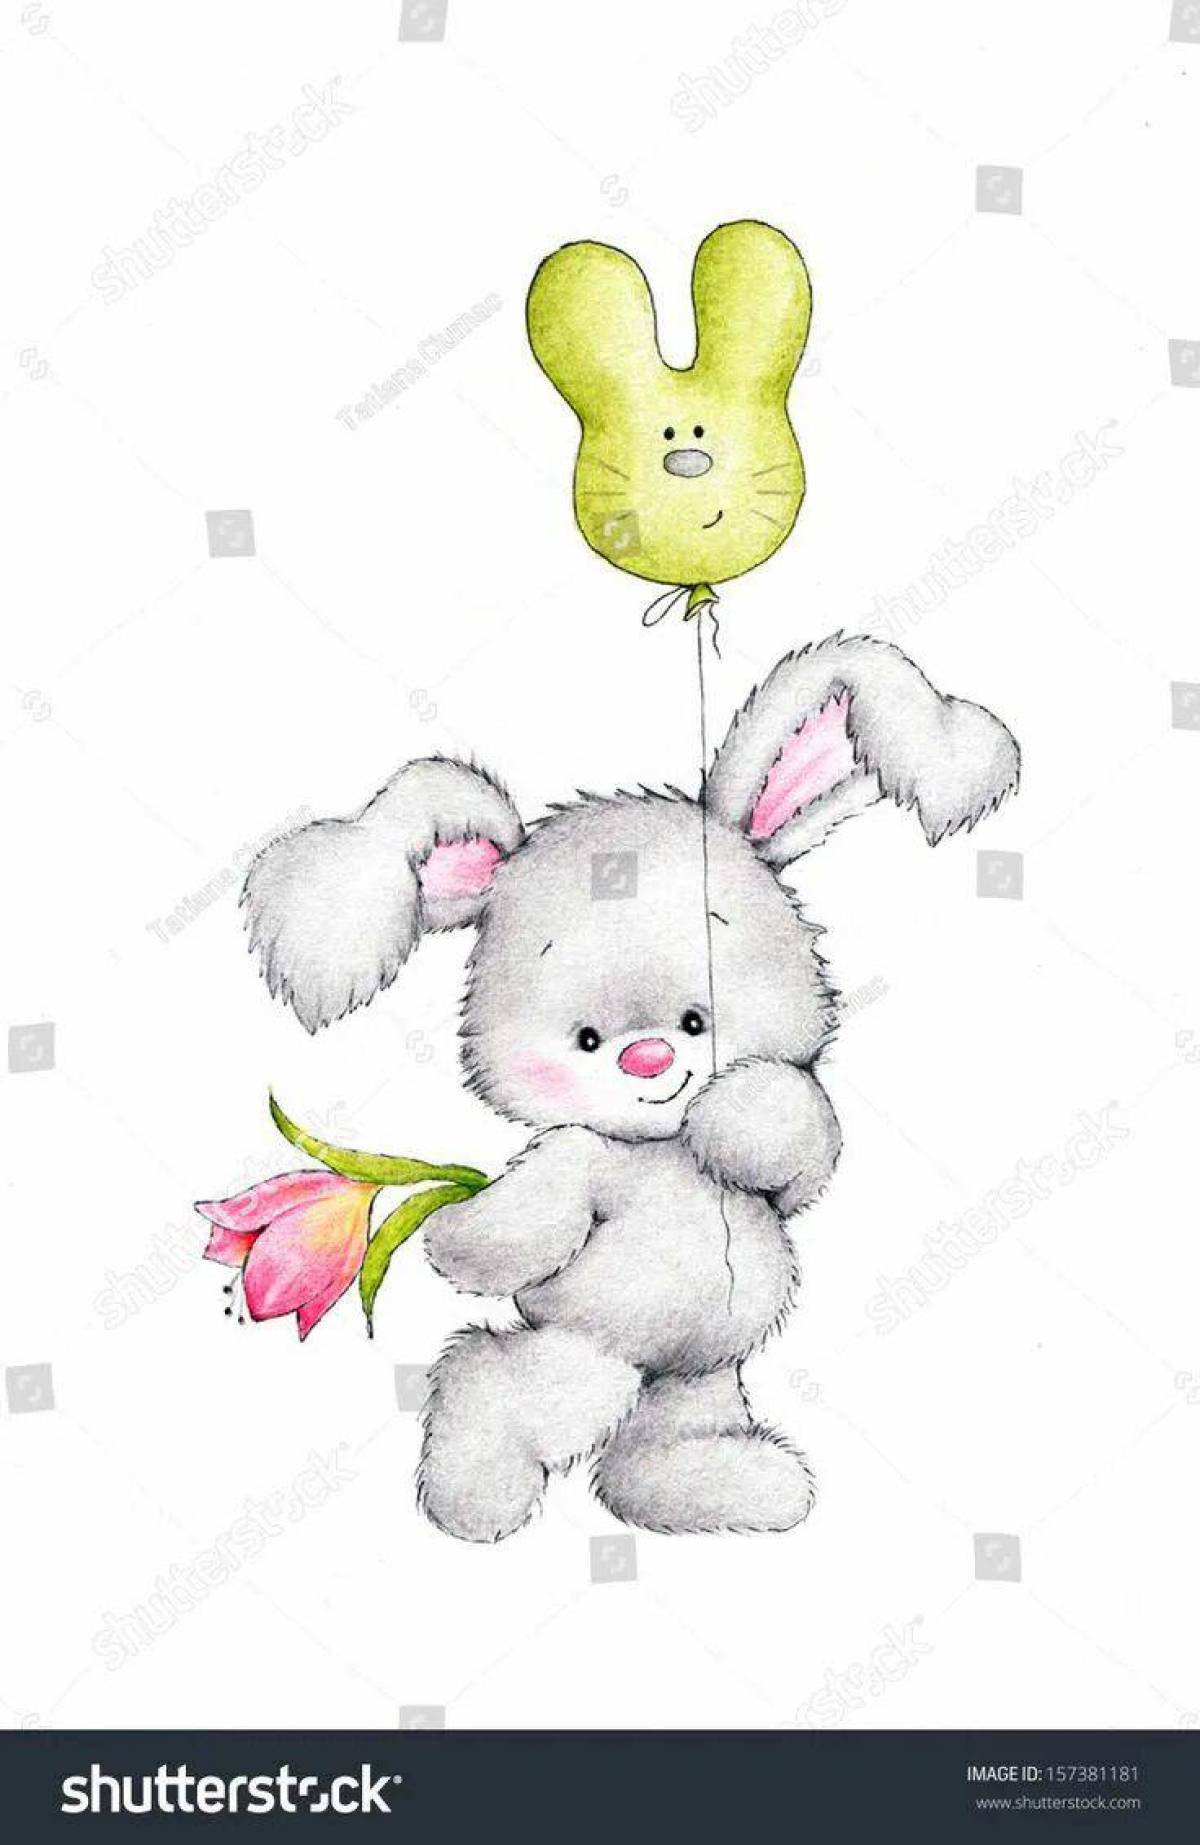 День зайца. Зайчик с цветком. Зайчик с цветочком. Зайка с цветочком. Зайчик с шариками.